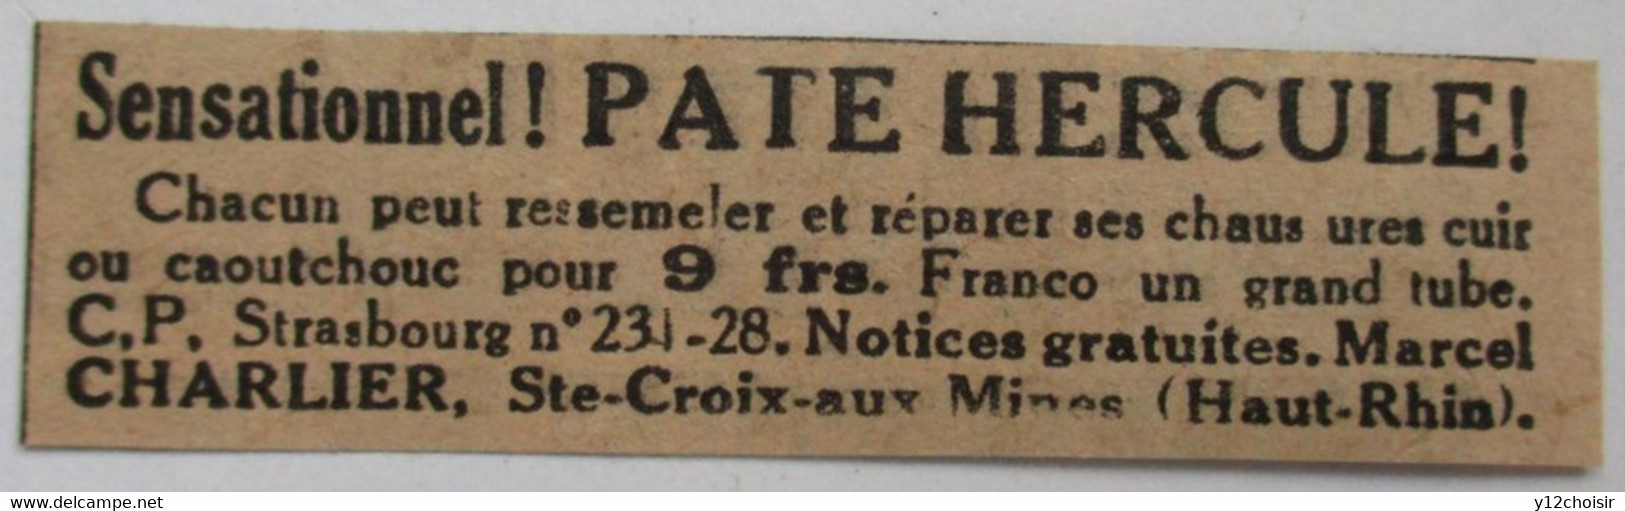 PUB 1933 STE SAINTE CROIX AUX MINES HAUT-RHIN MARCEL CHARLIER PATE HERCULE - Sainte-Croix-aux-Mines